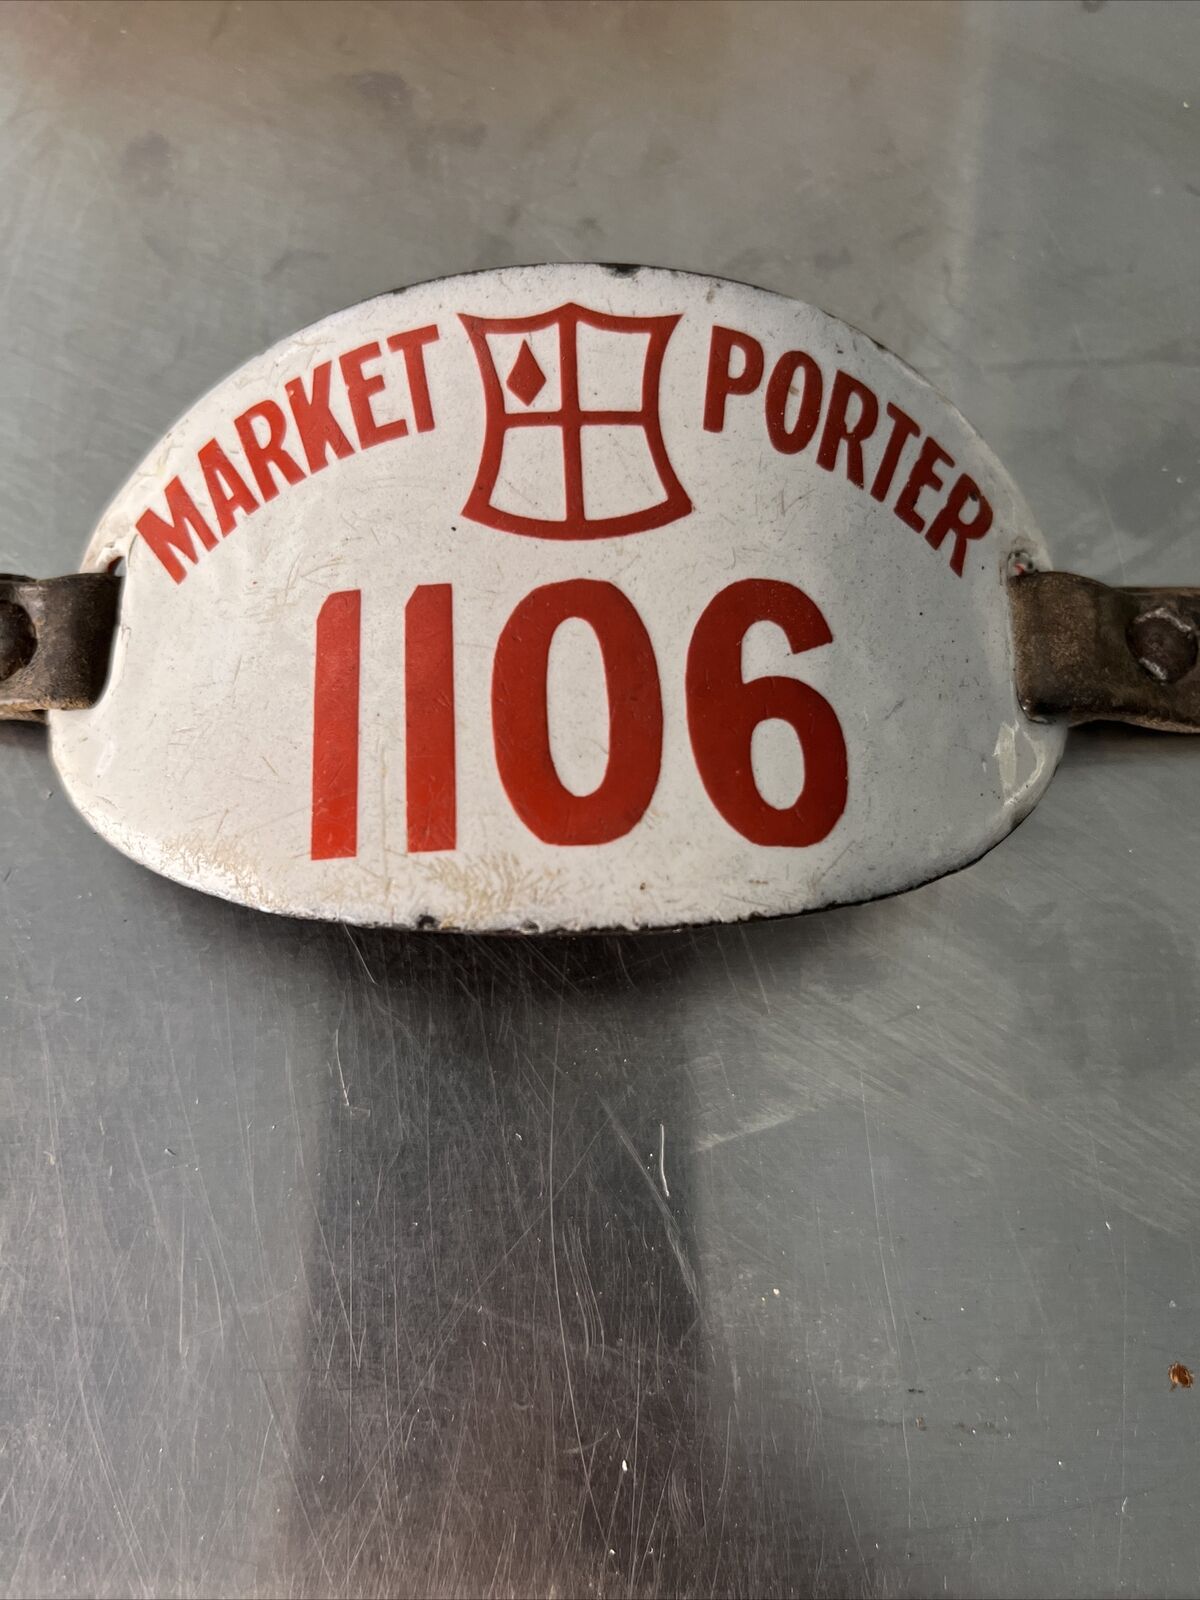 1930s England MARKET PORTER Porcelain License Plate Tag 1106